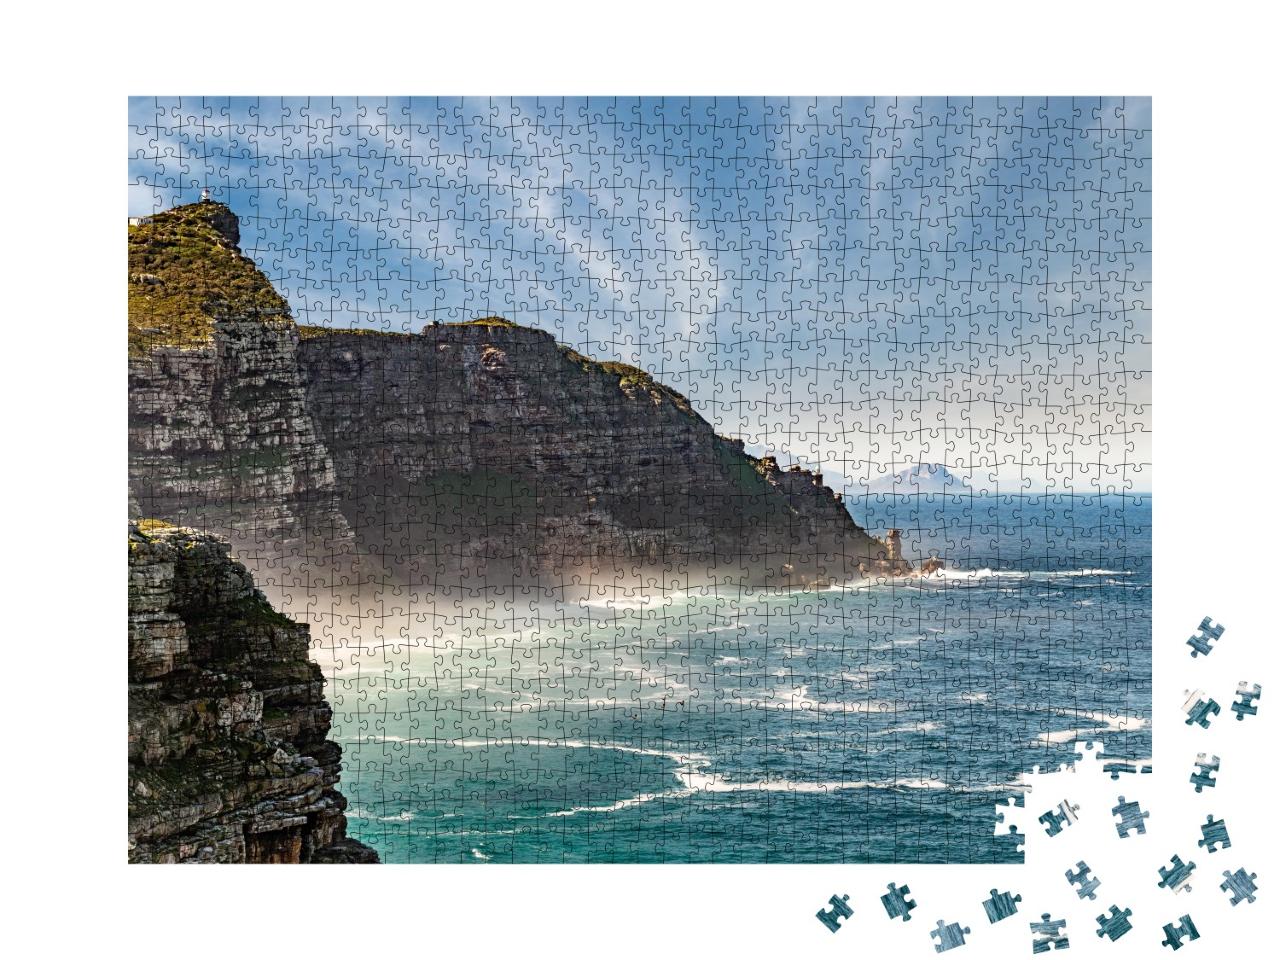 Puzzle de 1000 pièces « Nuages au-dessus du Cap de Bonne Espérance, Afrique du Sud »